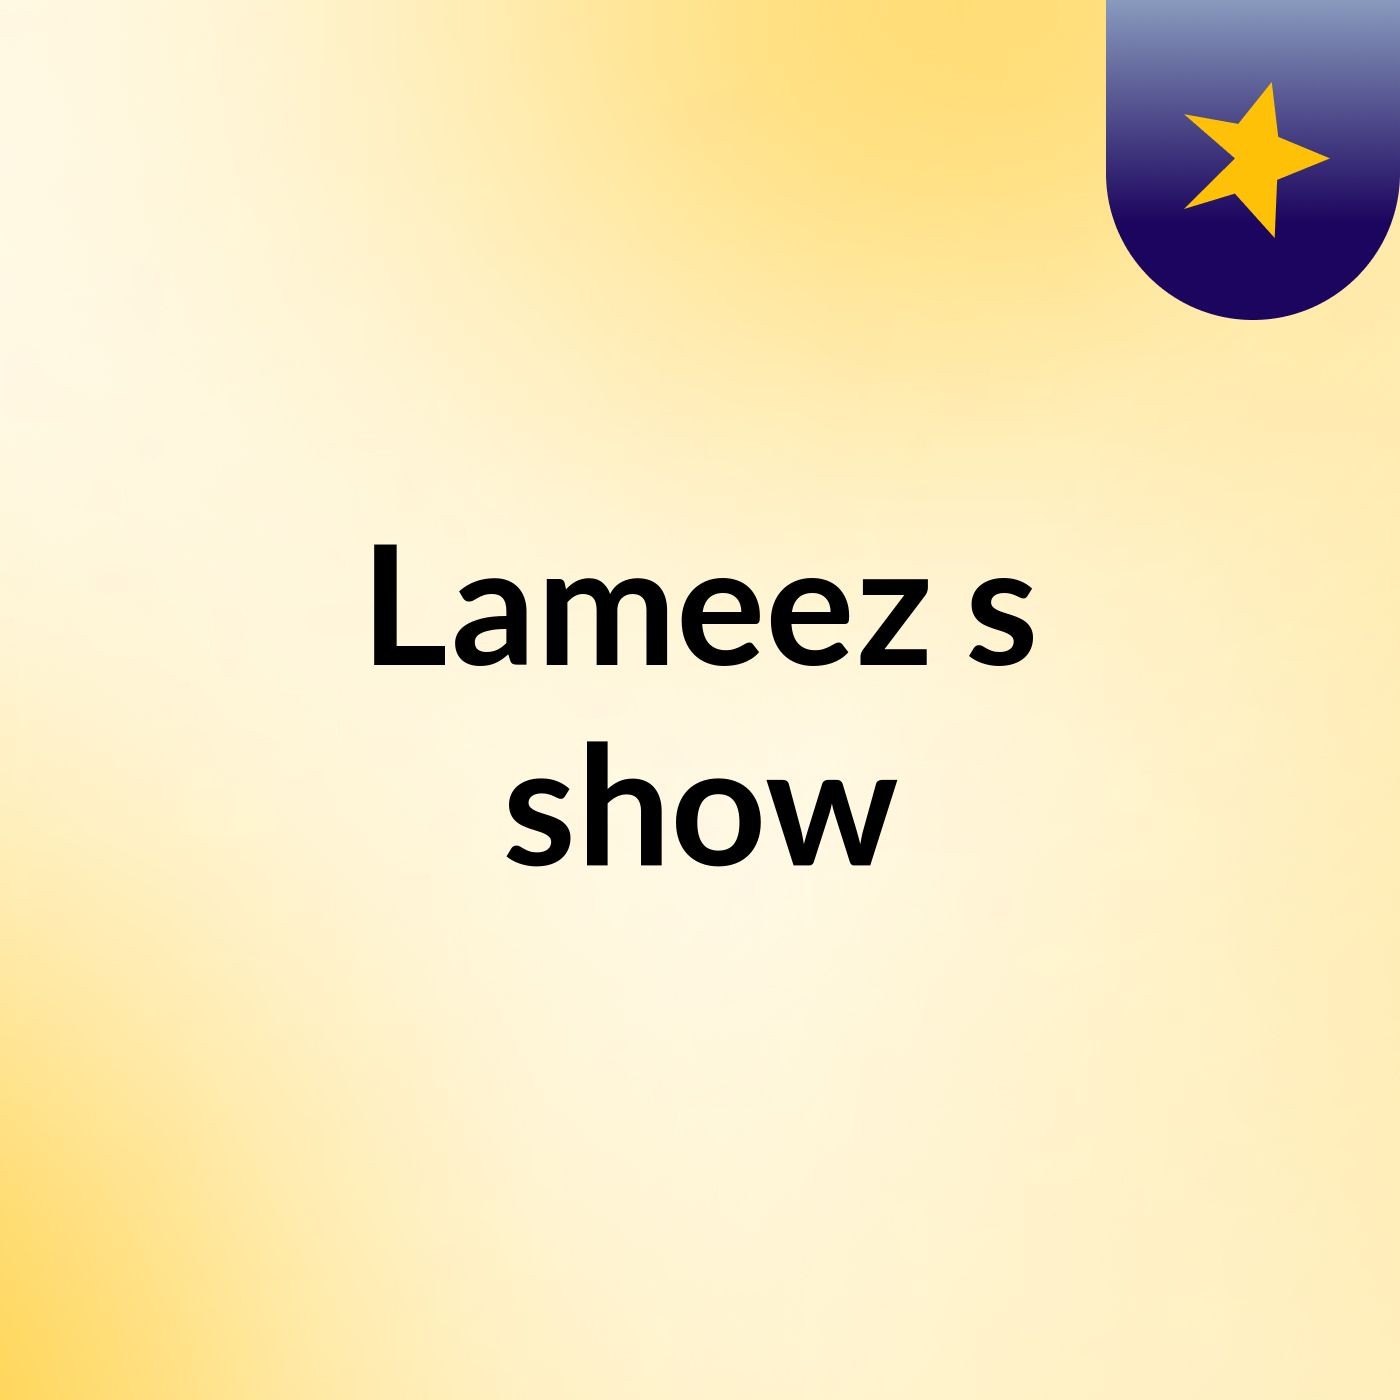 Lameez's show